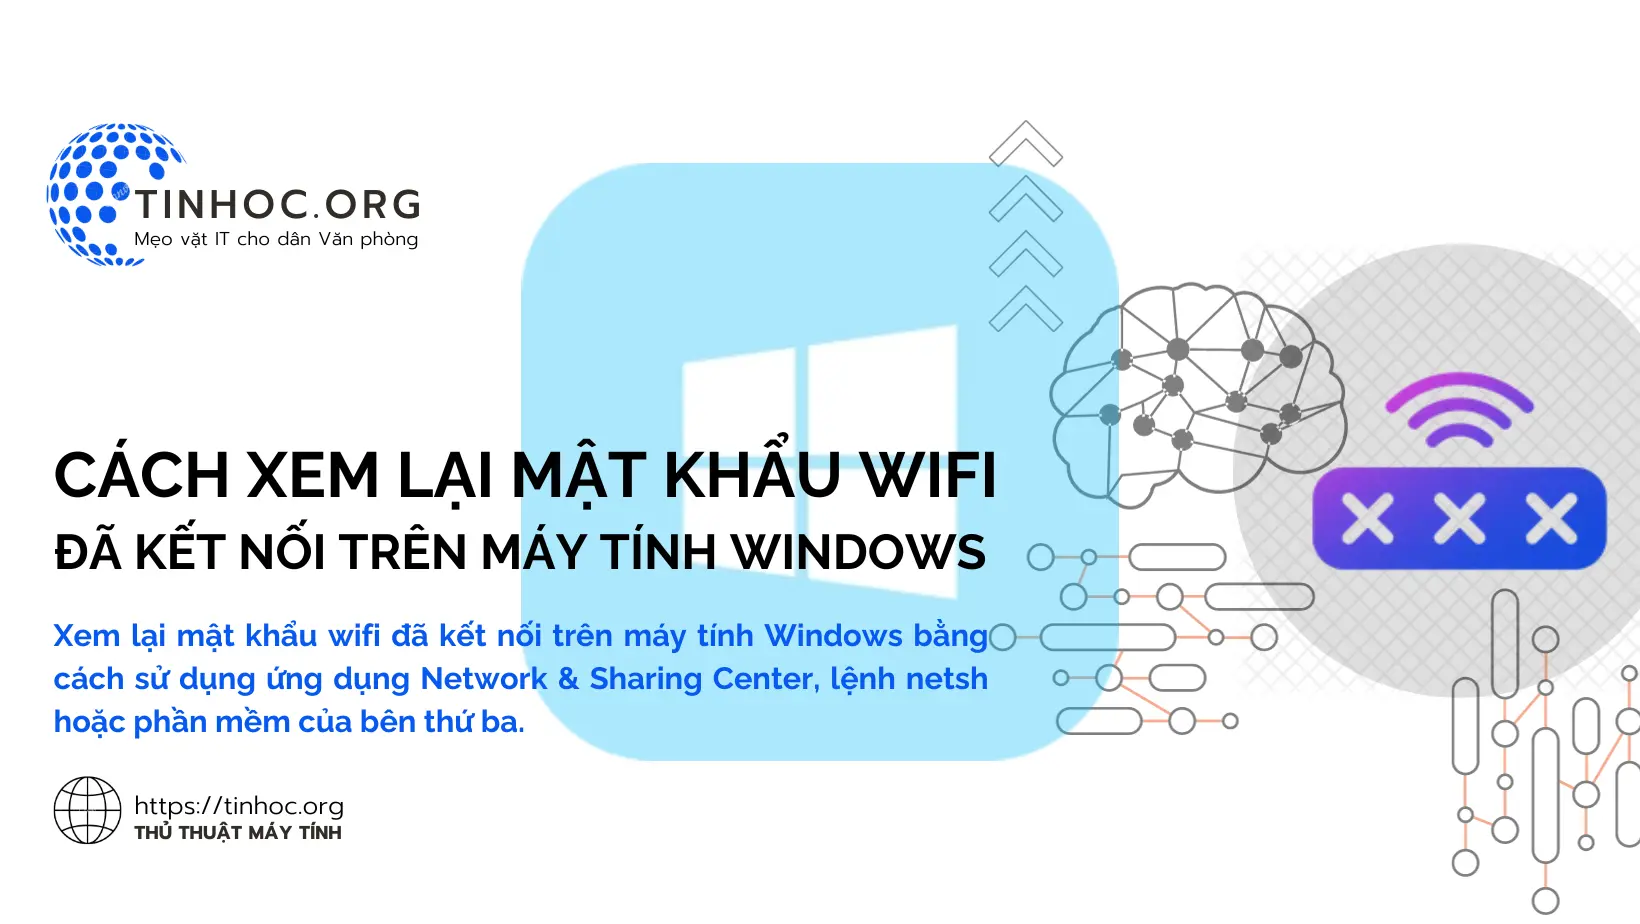 Xem lại mật khẩu wifi đã kết nối trên máy tính Windows bằng cách sử dụng ứng dụng Network & Sharing Center, lệnh netsh hoặc phần mềm của bên thứ ba.